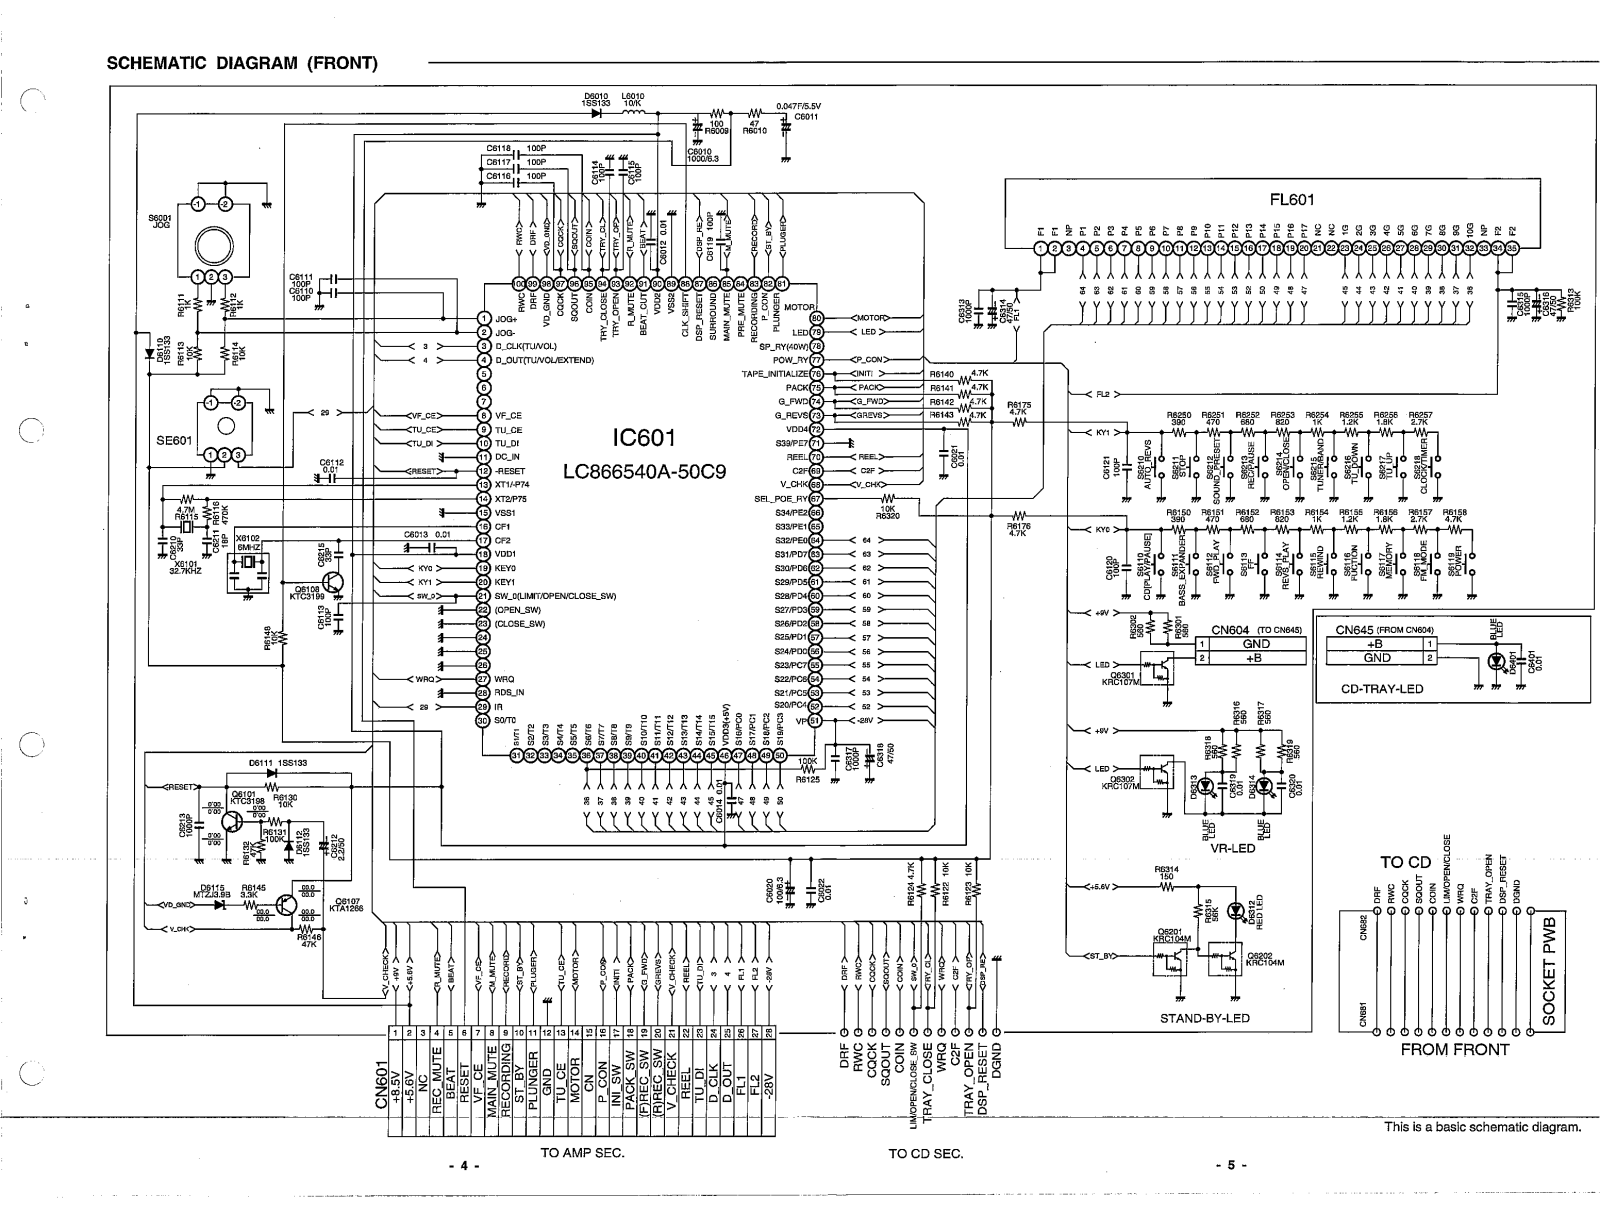 Sanyo DC DA3000 Service Manual